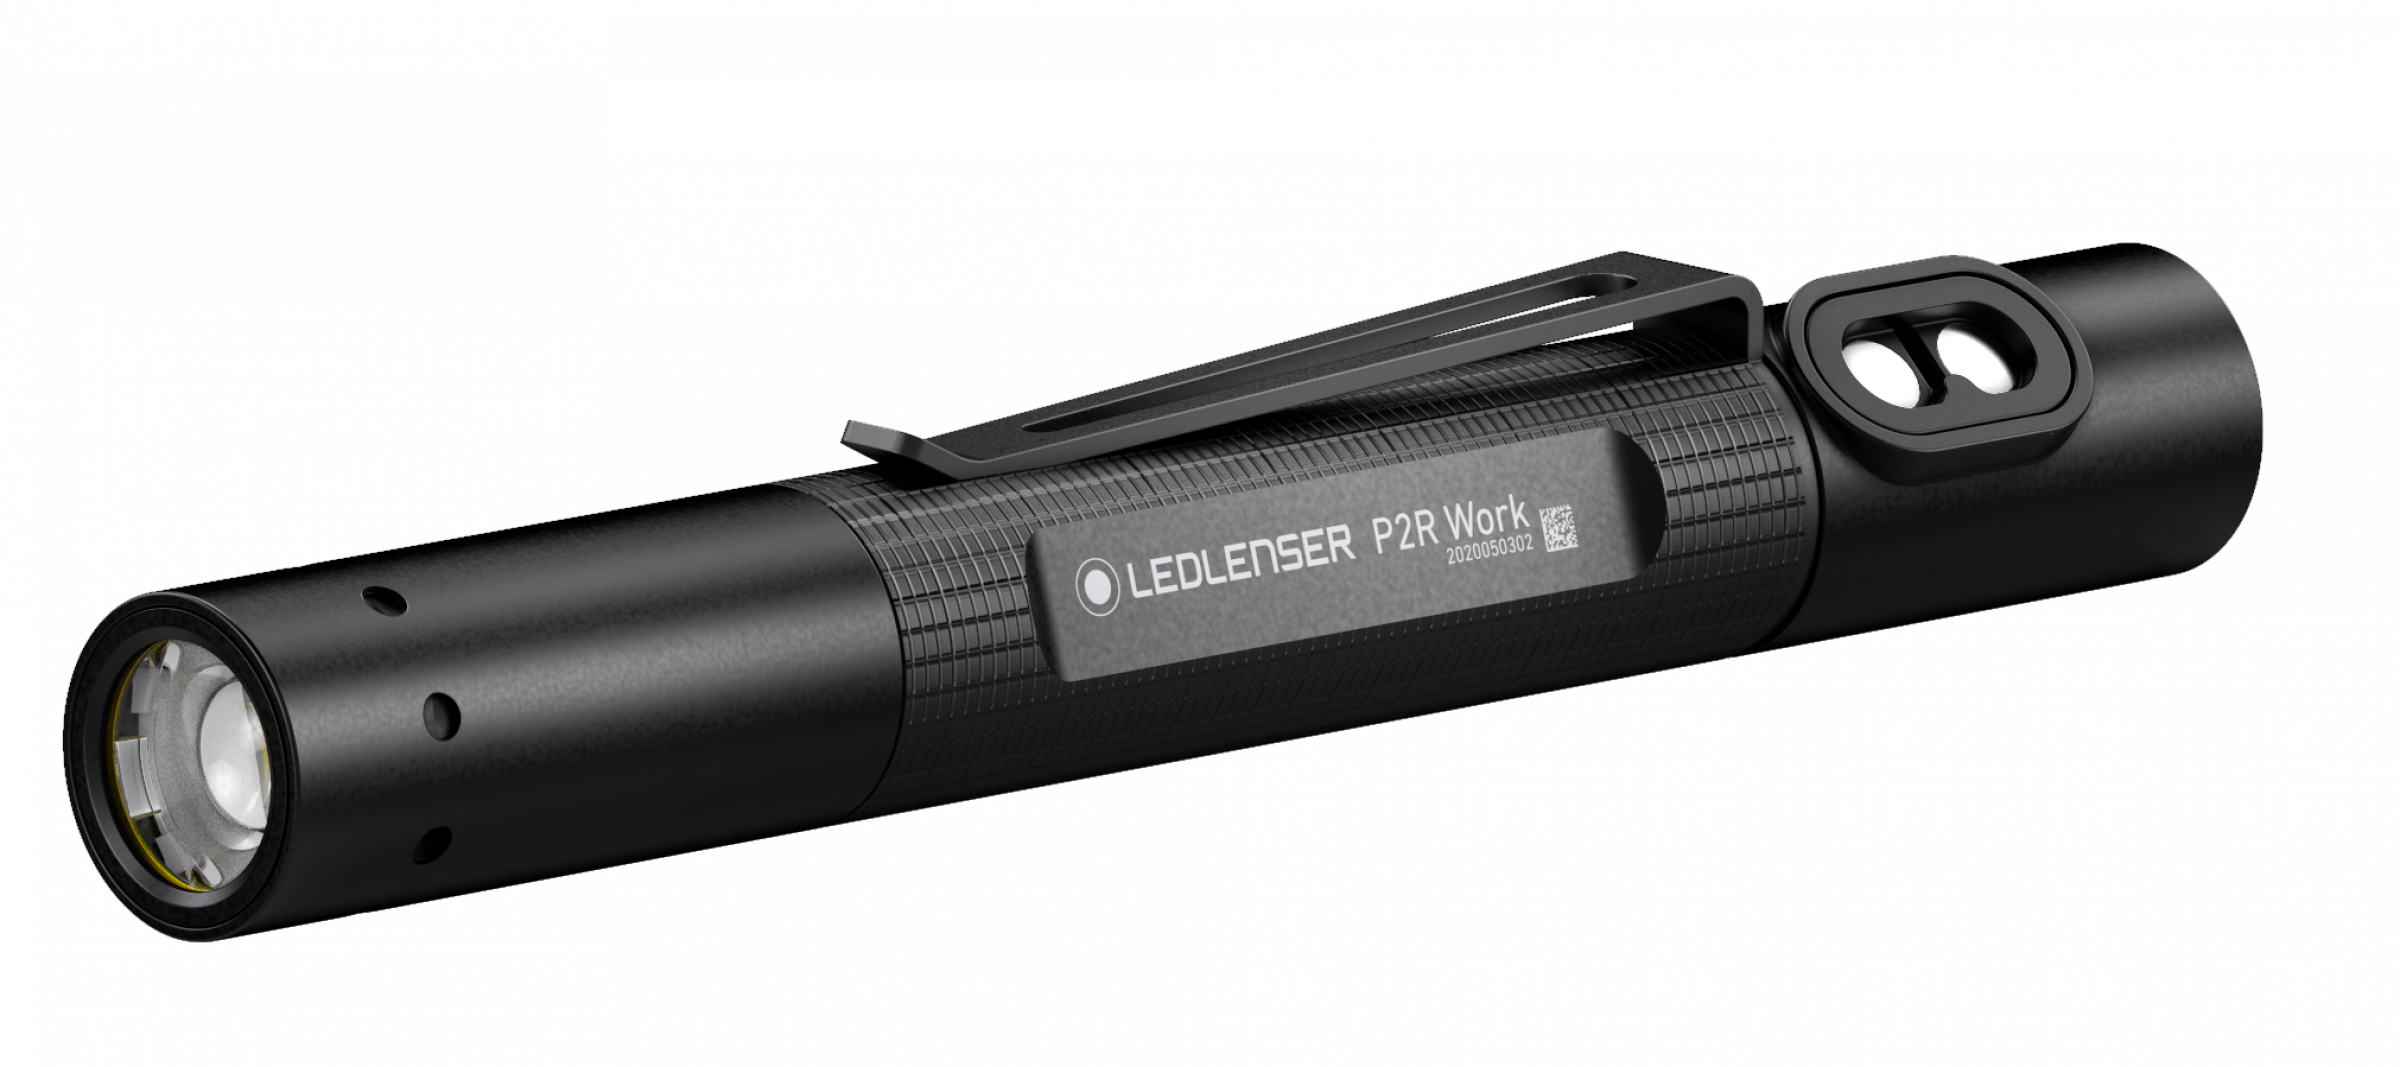 Led Lenser Penlight P2R Work inkl. Li-ion Akku